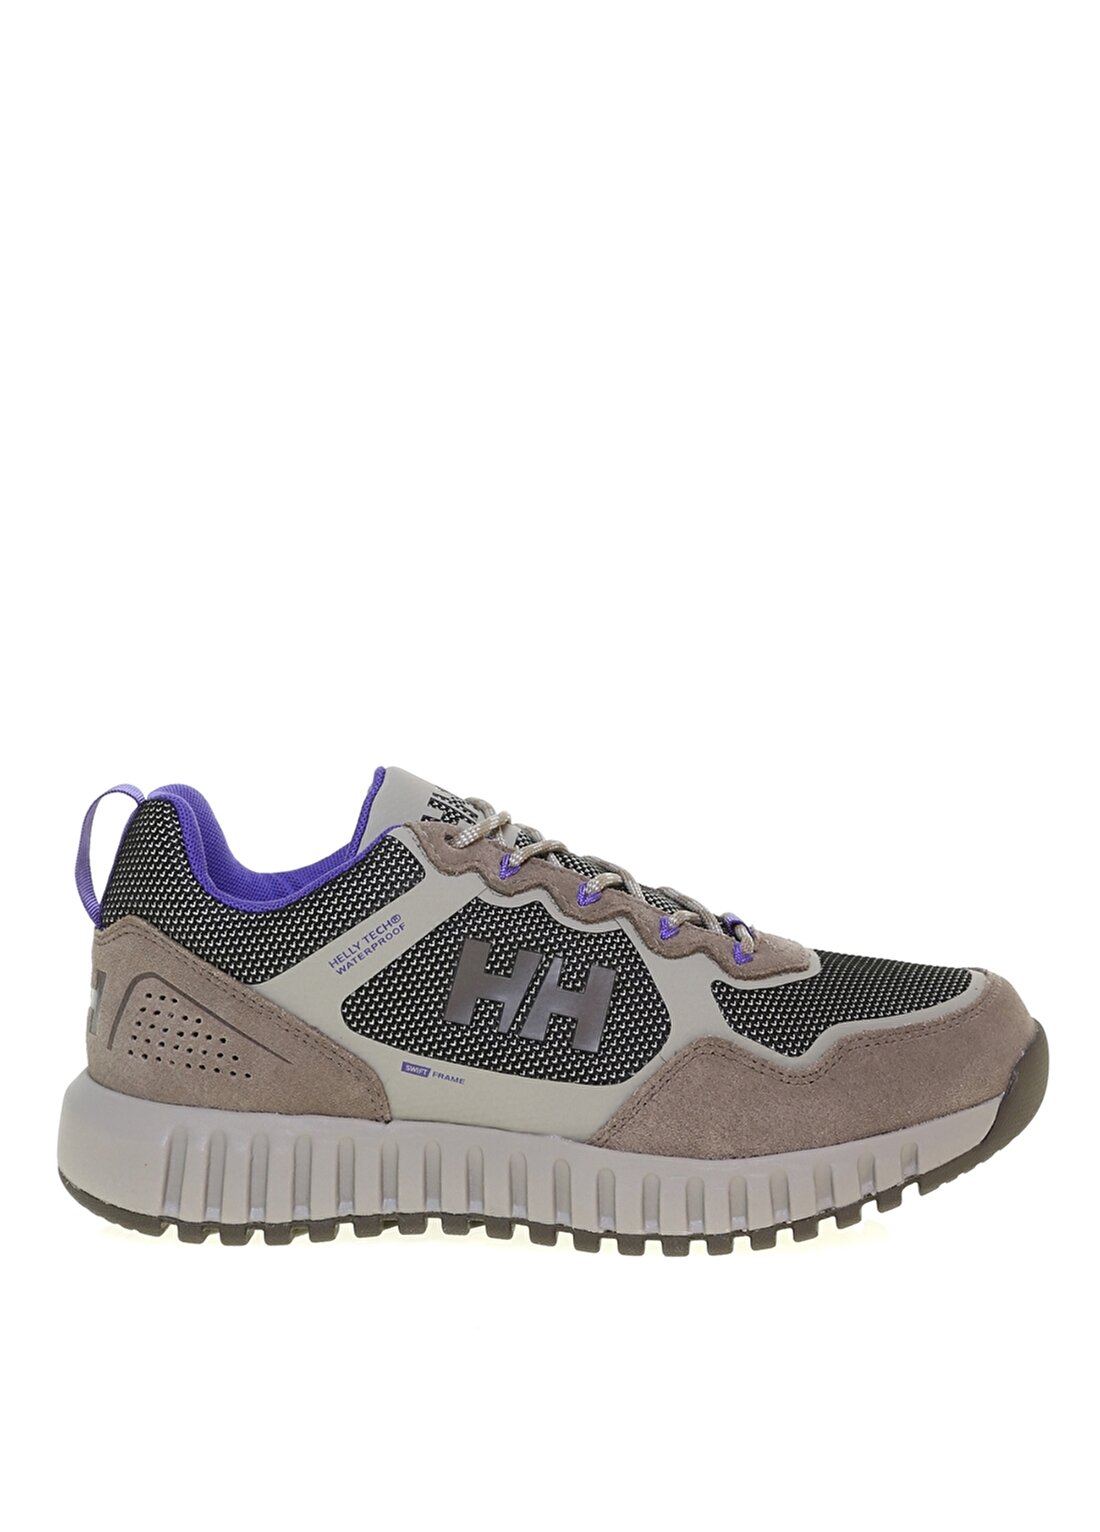 Helly Hansen Hha.11514 Gri Kadın Outdoor Ayakkabısı